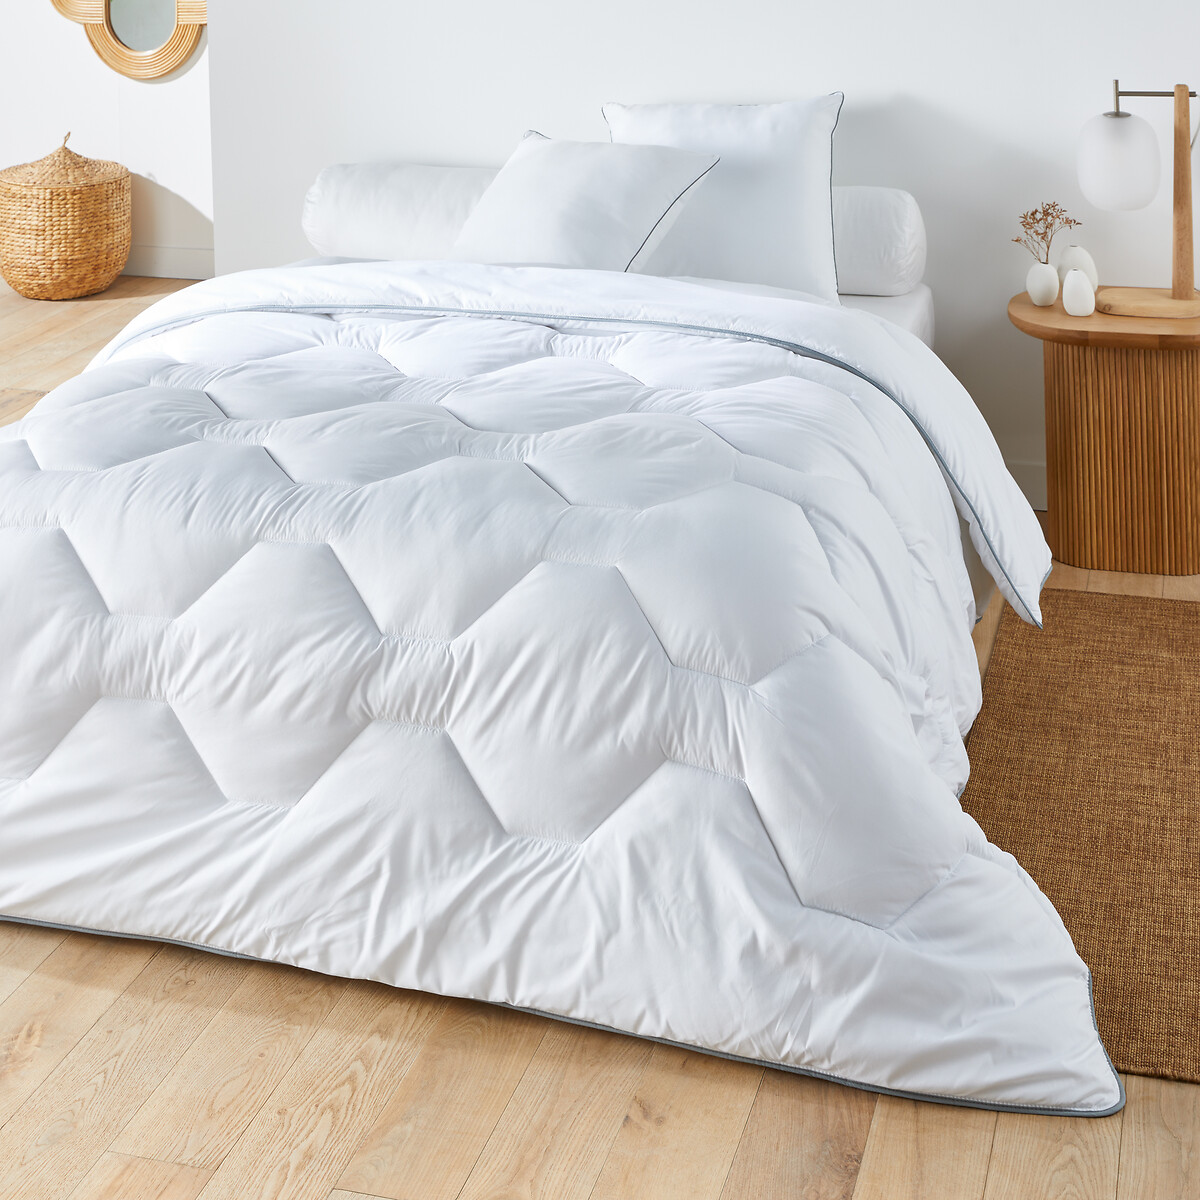 Одеяло из синтетического материала для прохладных помещений Confort htel  260 x 240 см белый LaRedoute, размер 260 x 240 см